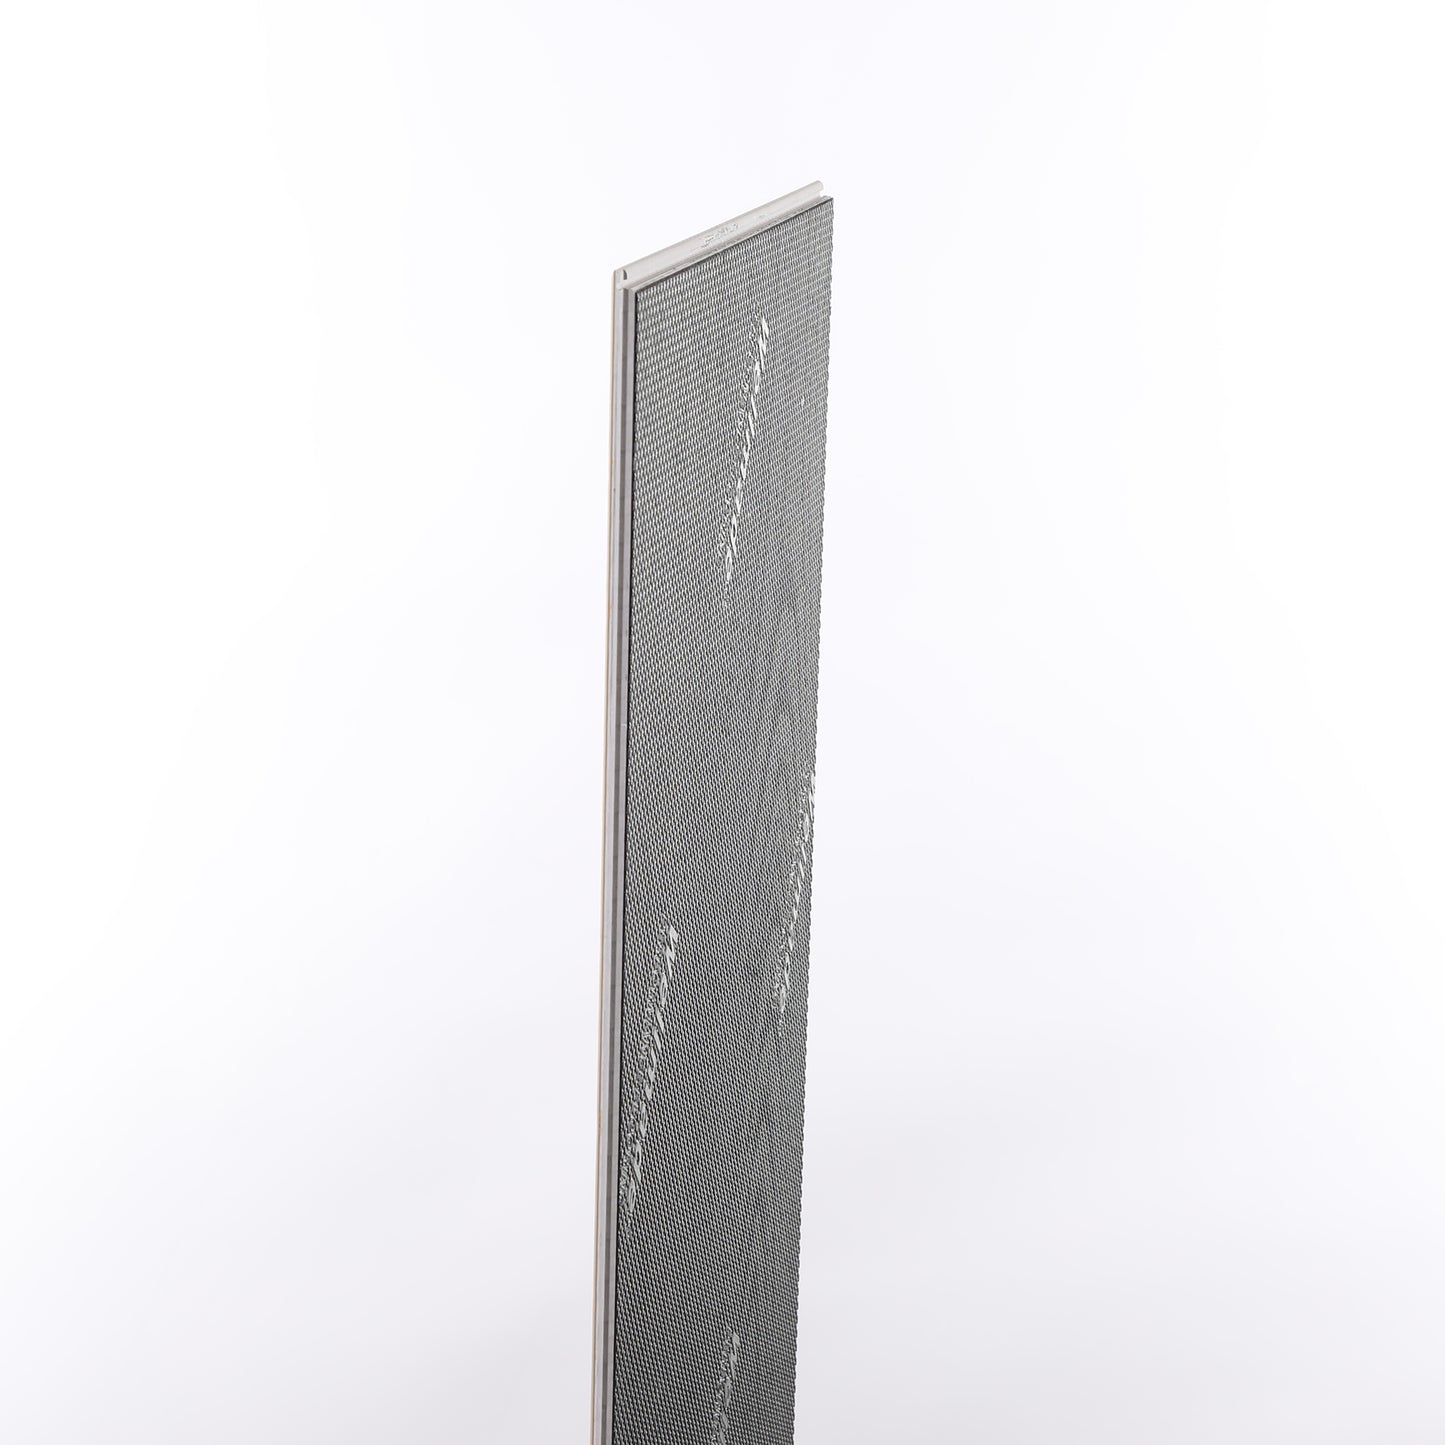 6mm Butterscotch EIR HDPC® Waterproof Luxury Vinyl Plank Flooring 9.13 in. Wide x 60 in. Long